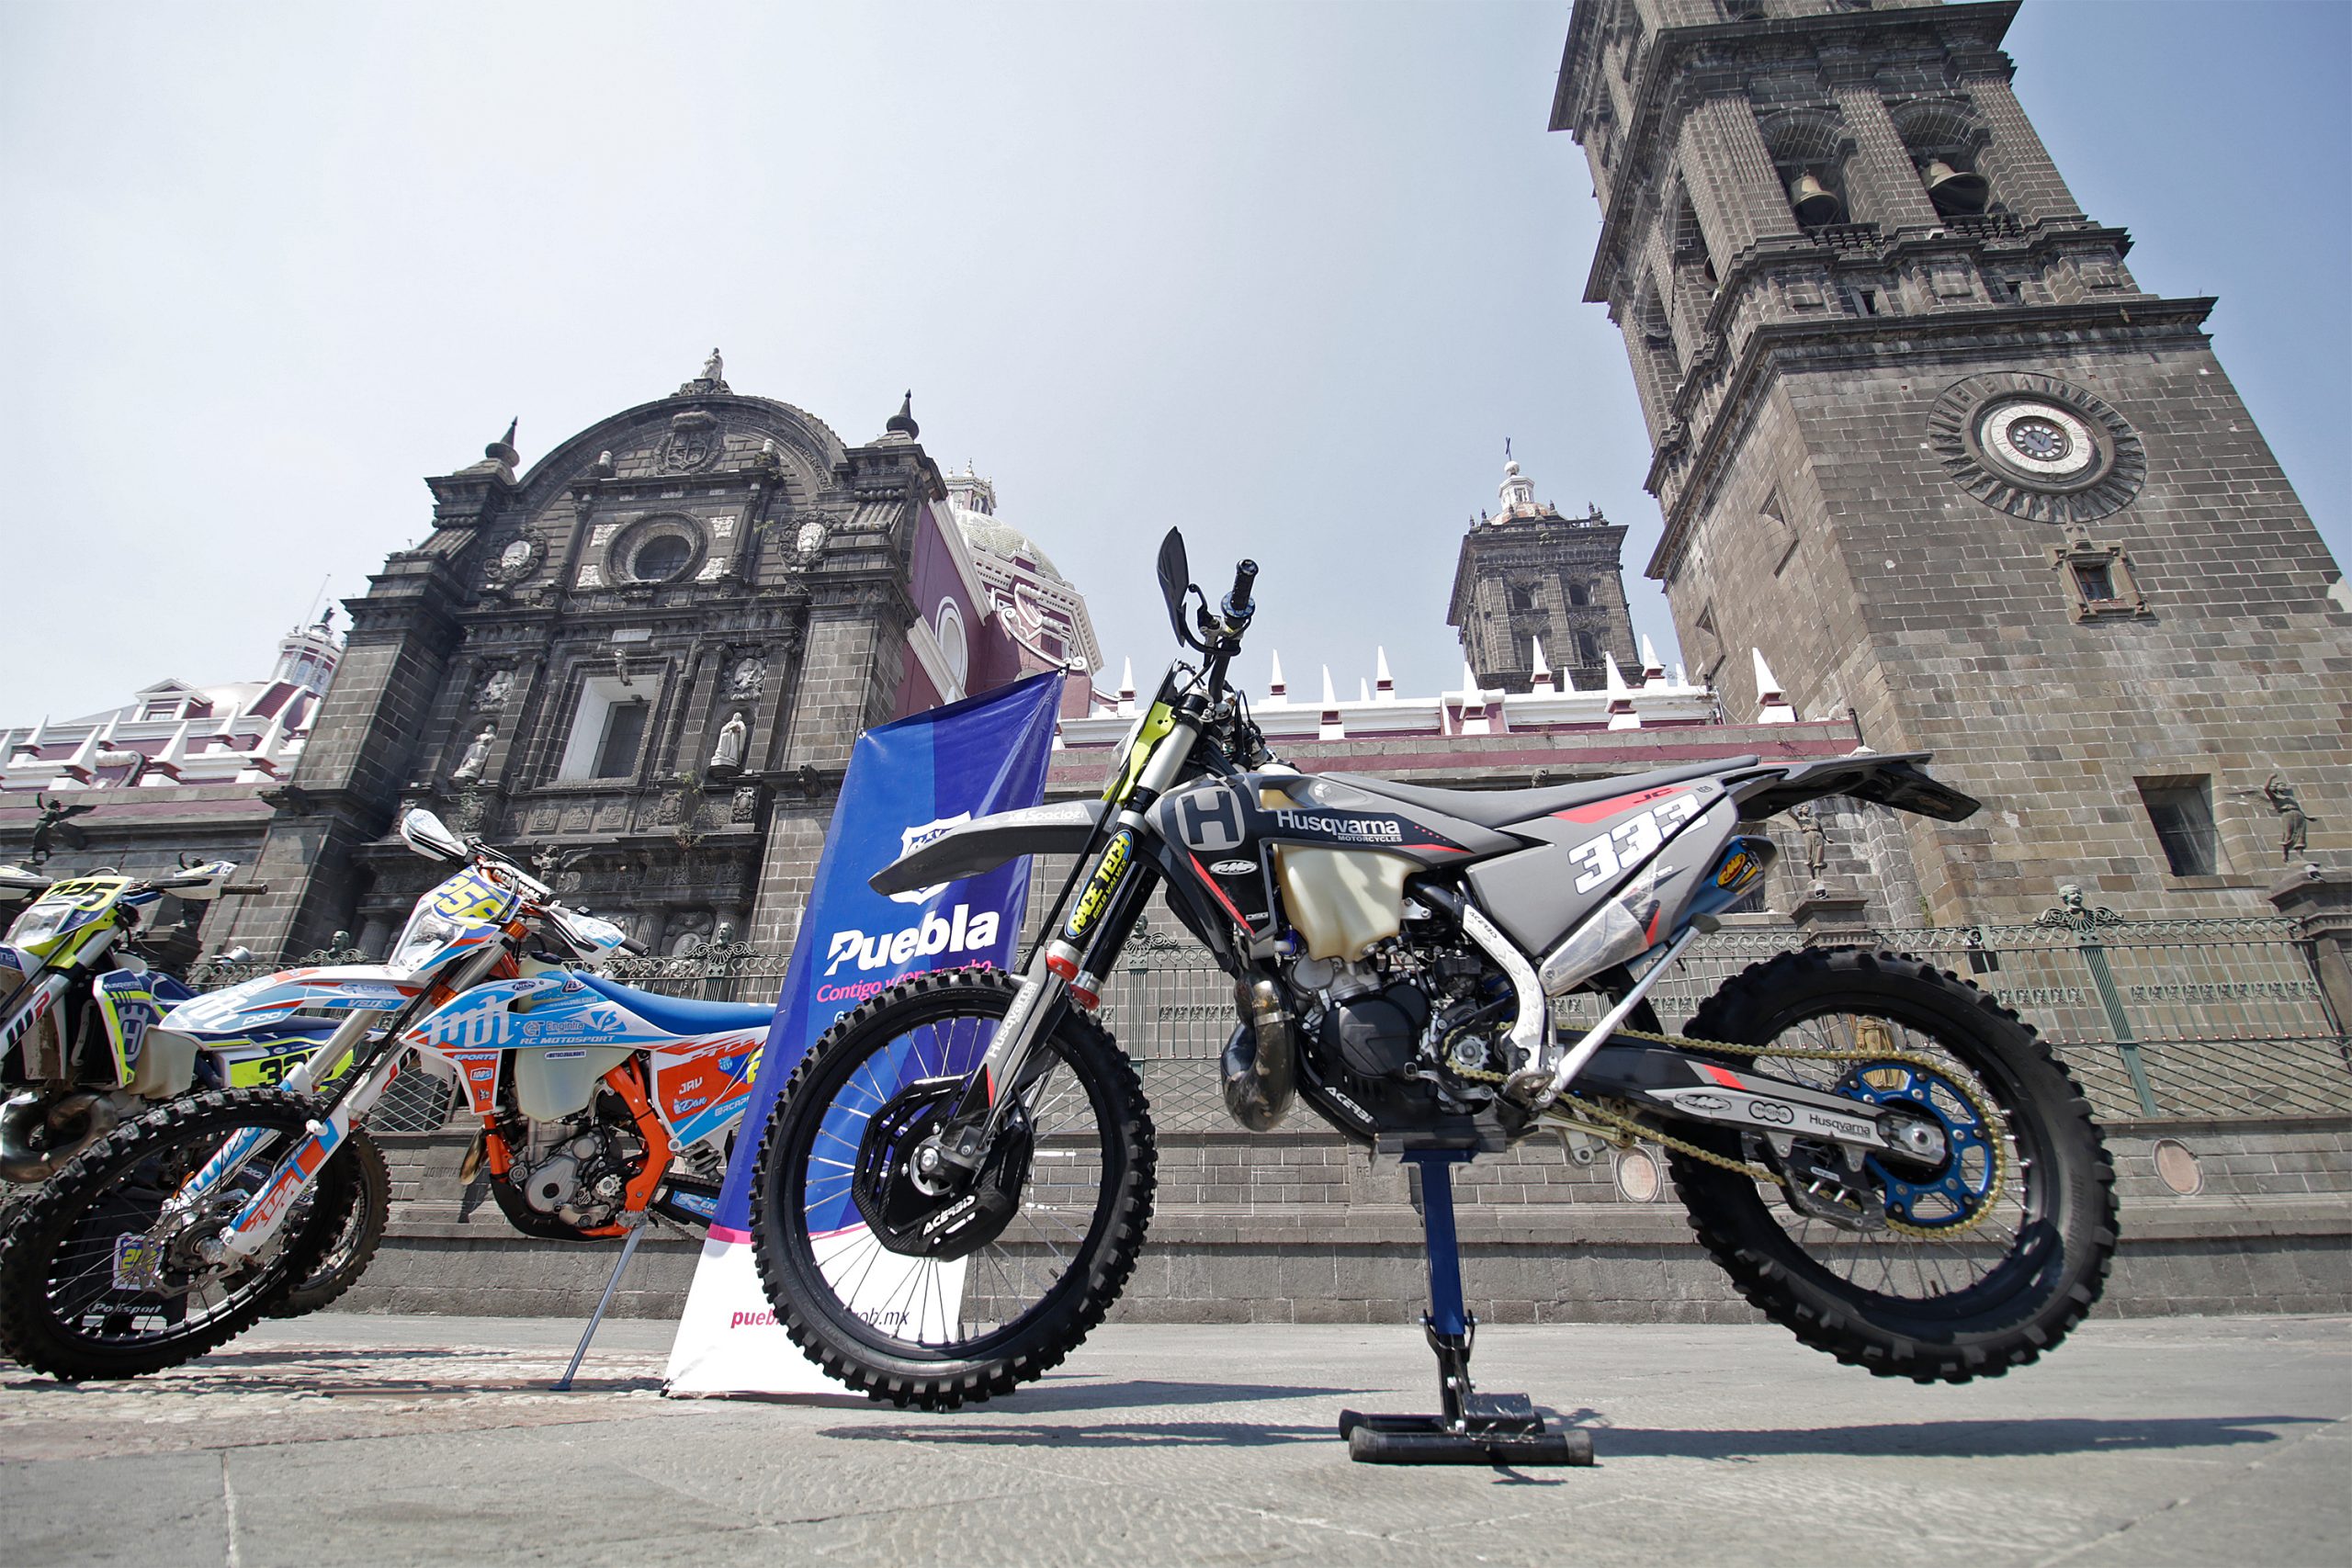 ¡Calienten motores! En junio llegará a Puebla, Campeonato Nacional de Motociclismo